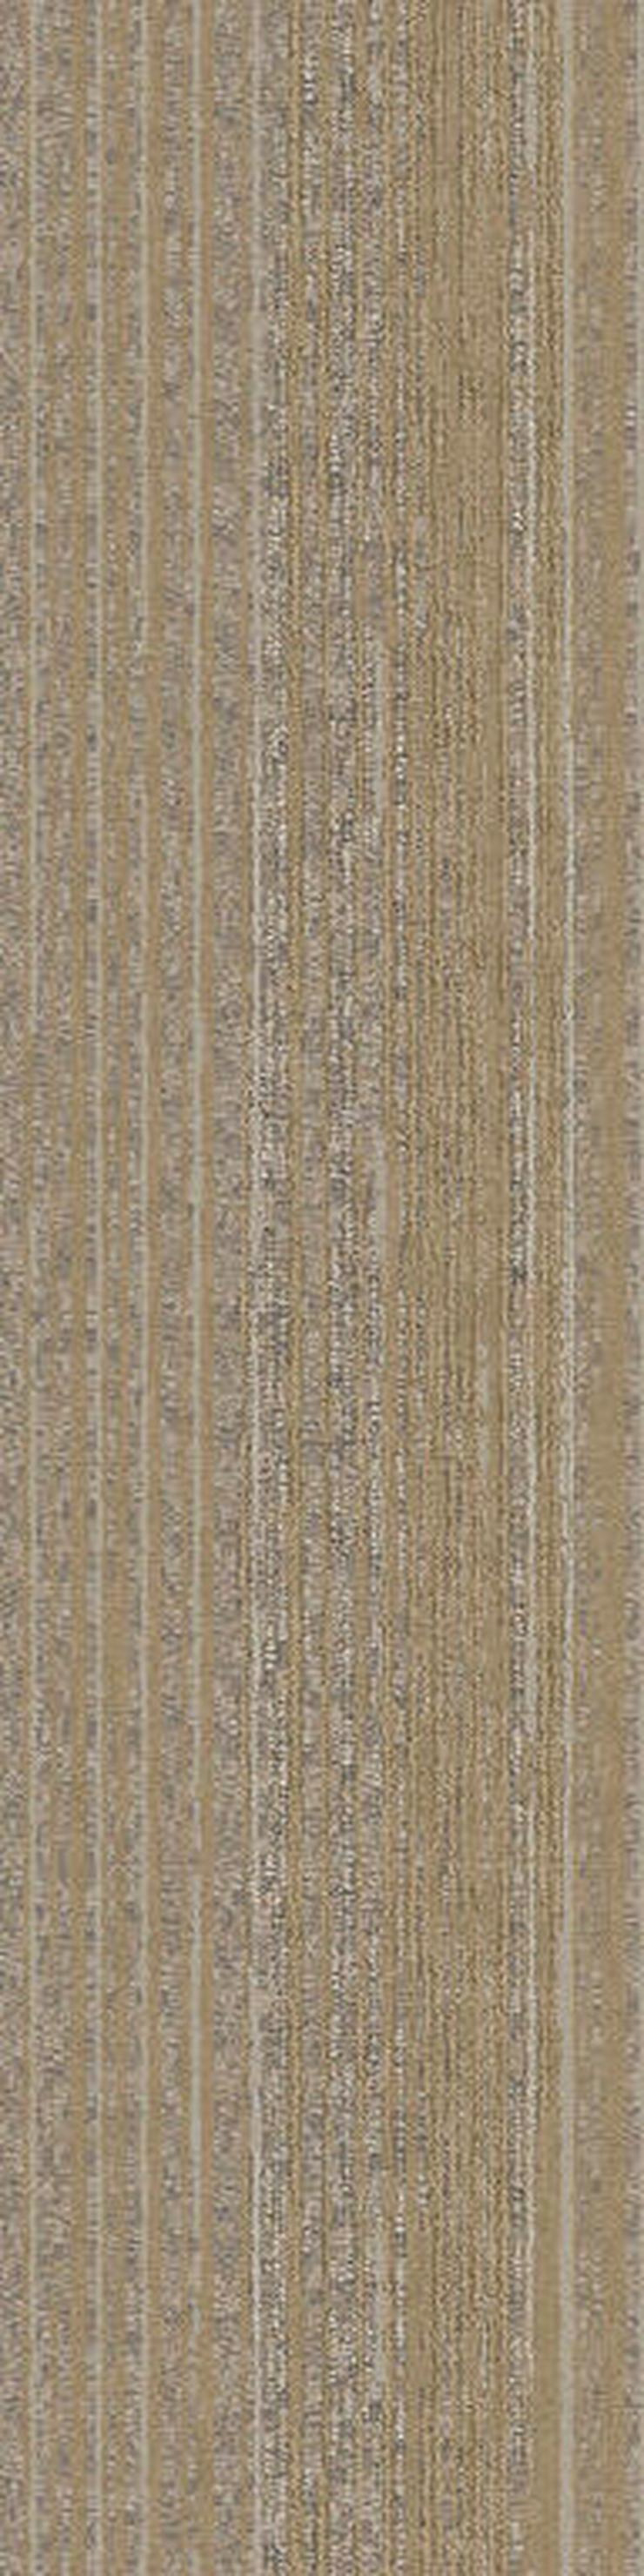 Schöne 25X100cm Teppichfliesen Mehrere Farben - Teppiche - Bild 12